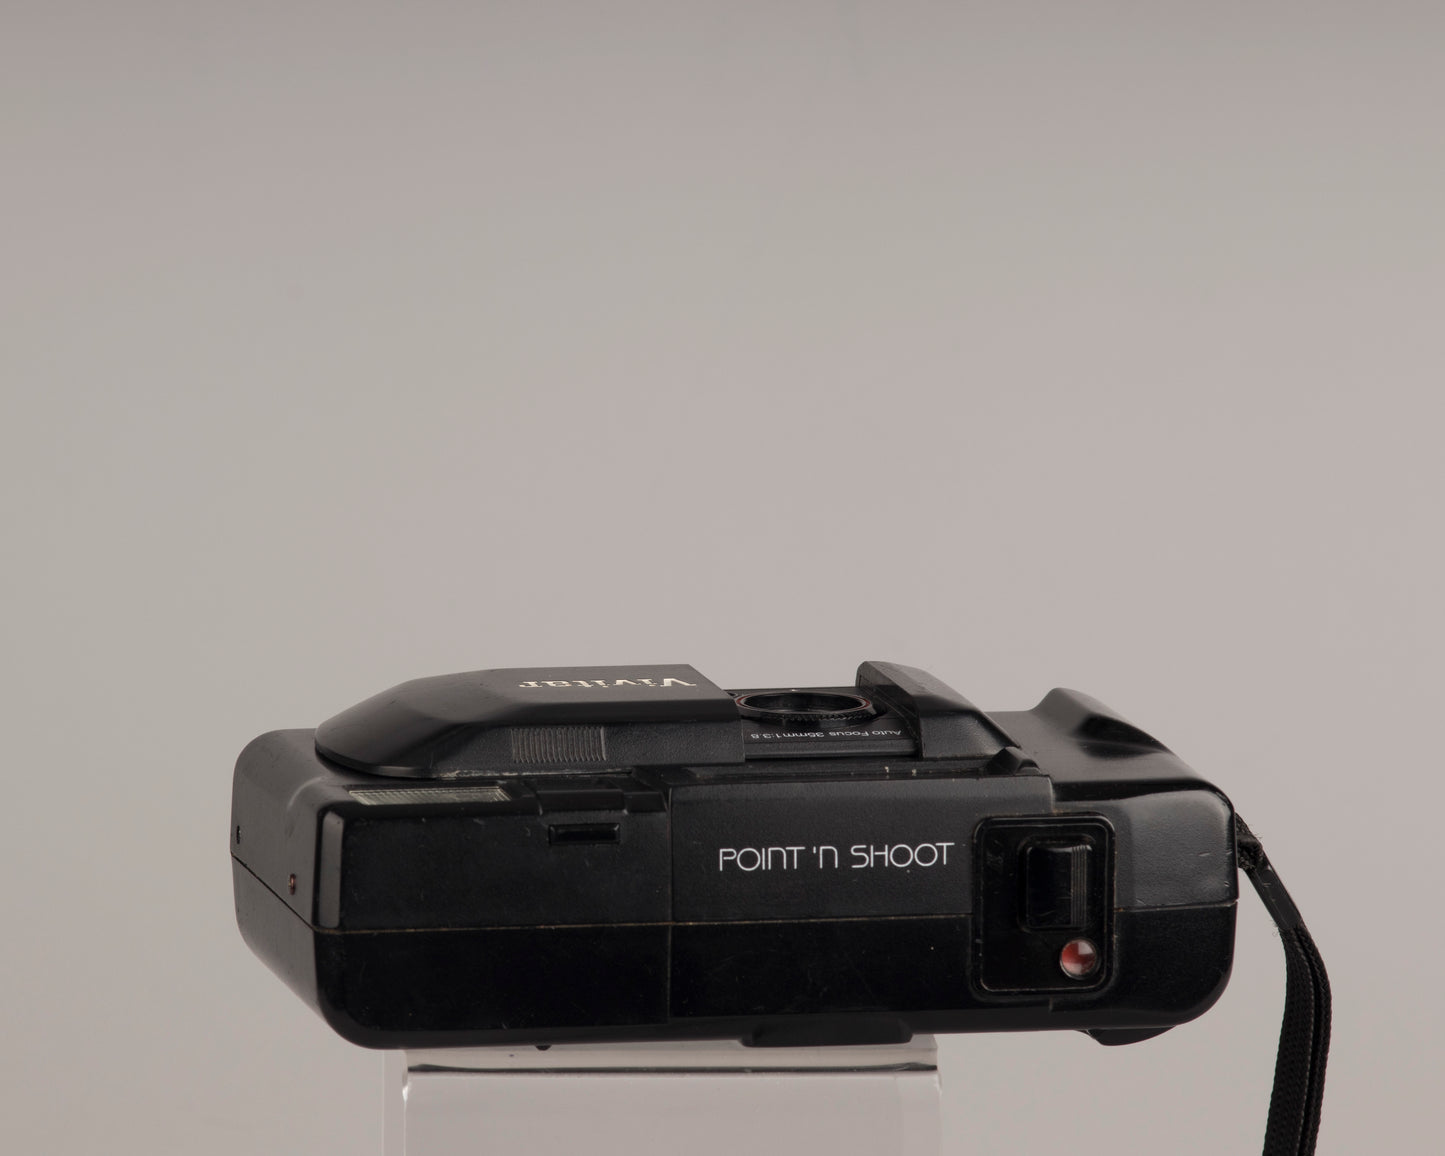 Vivitar PS35 35mm film camera